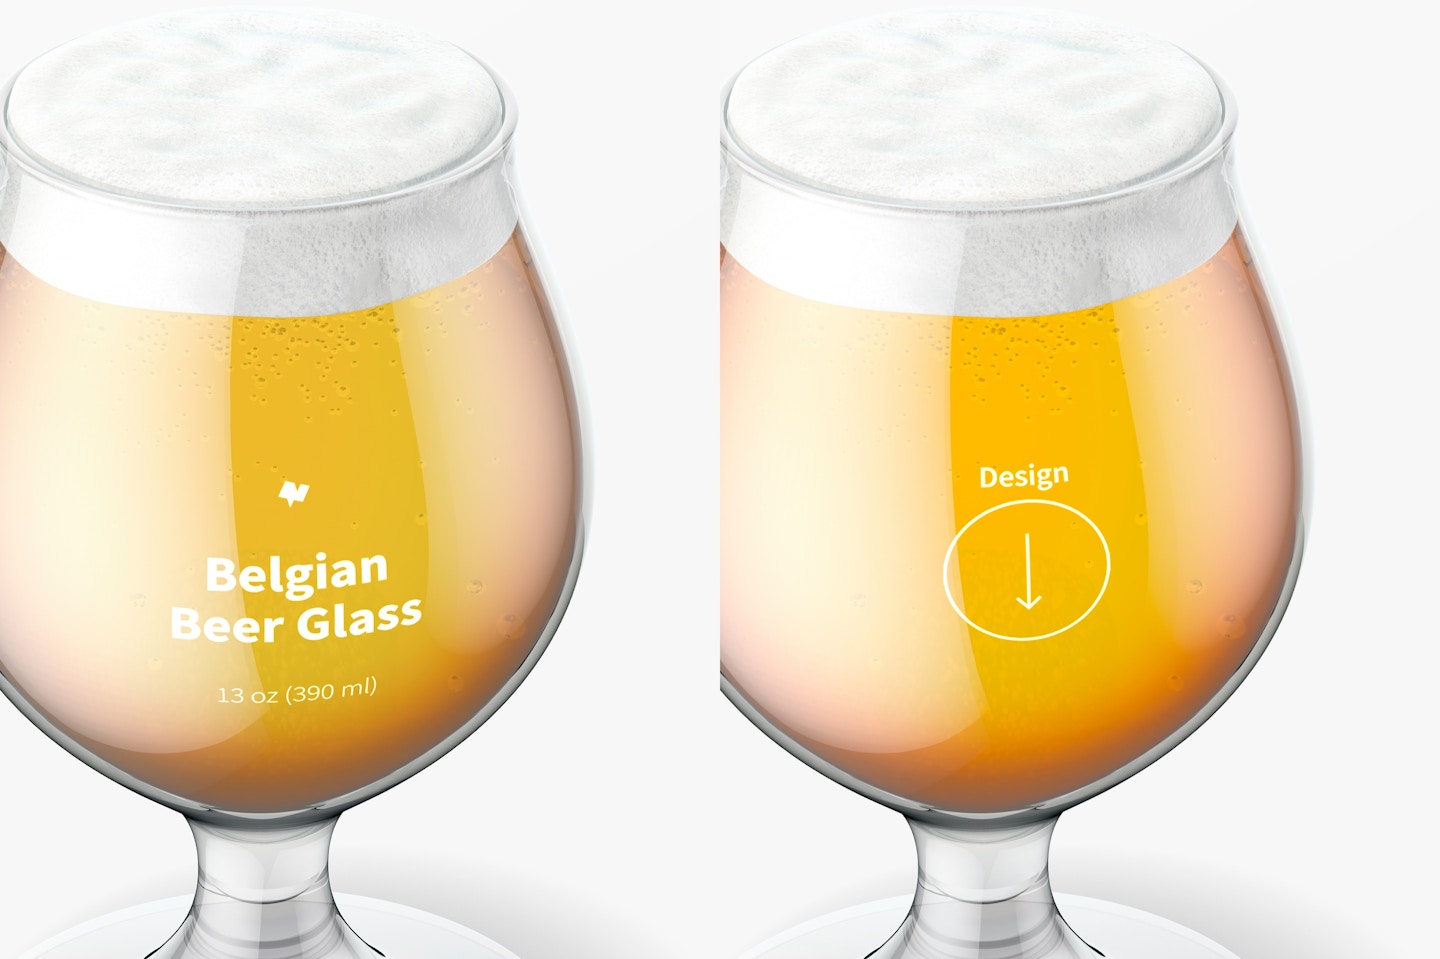 13 oz Belgian Beer Glass Mockup, Close Up